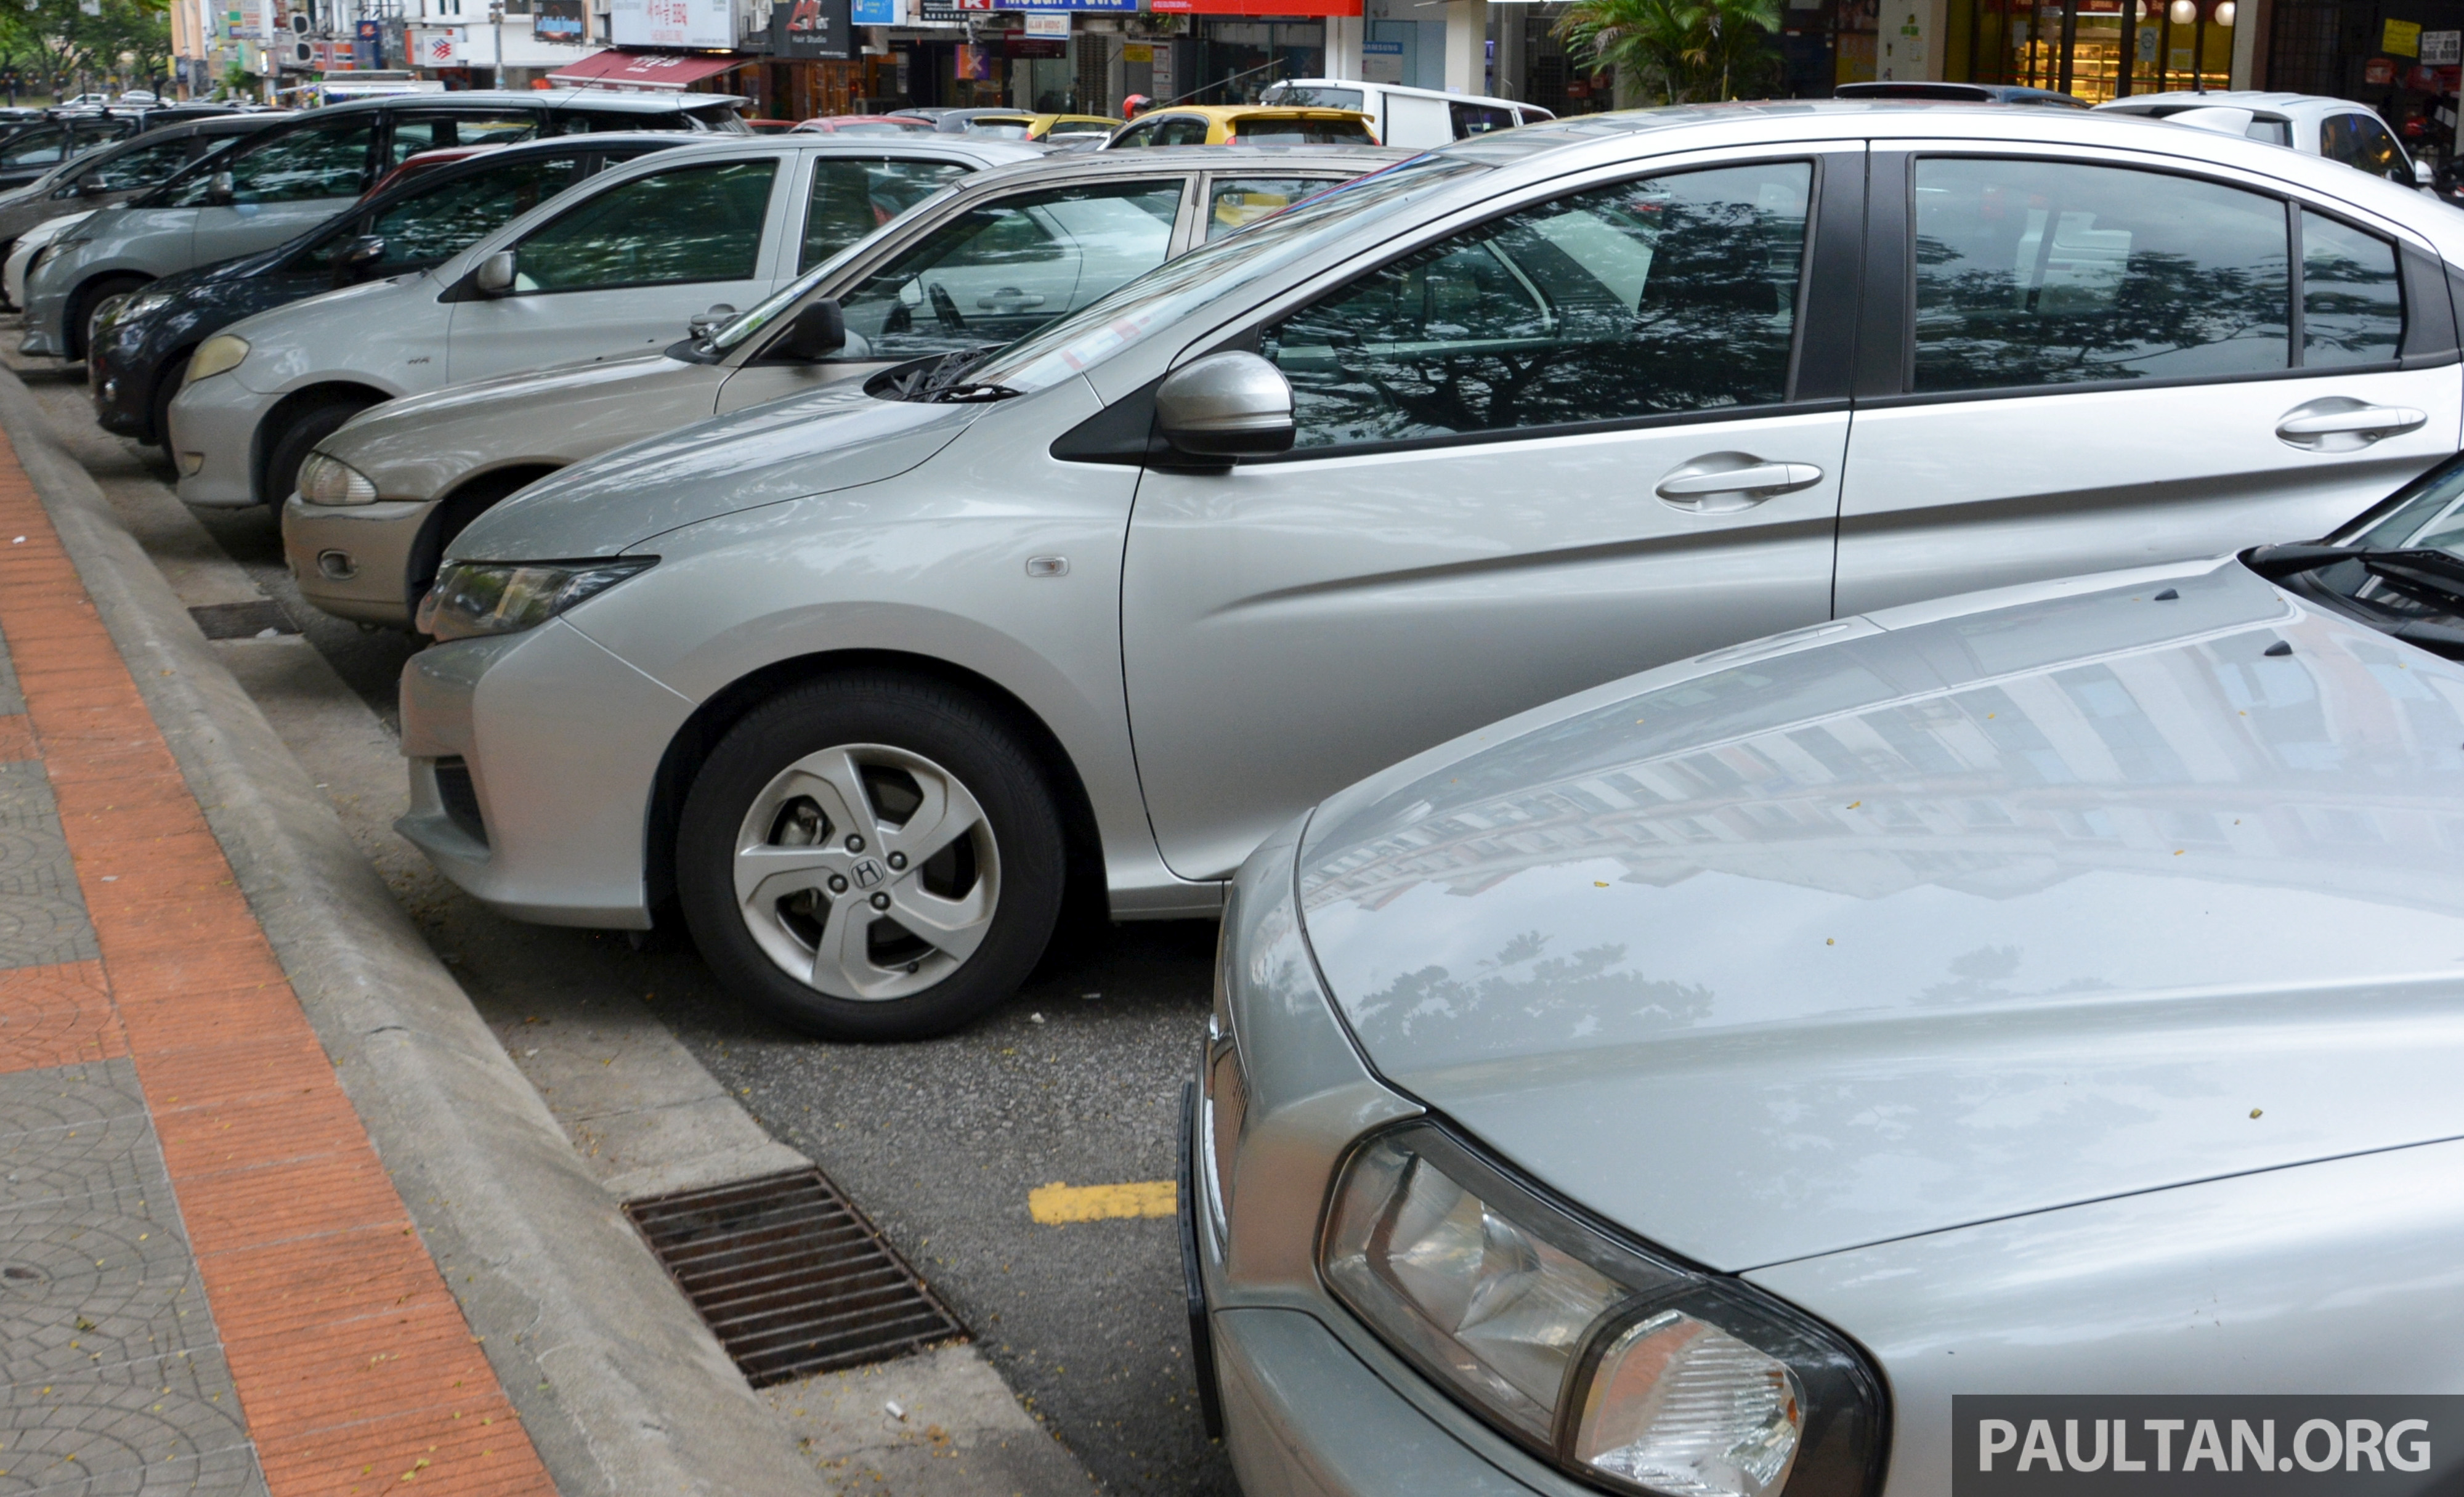 Mbsj Imposing 2 Hour Parking Limit At Busy Areas Subang Taipan Sunway Bandar Puteri Puchong Paultan Org